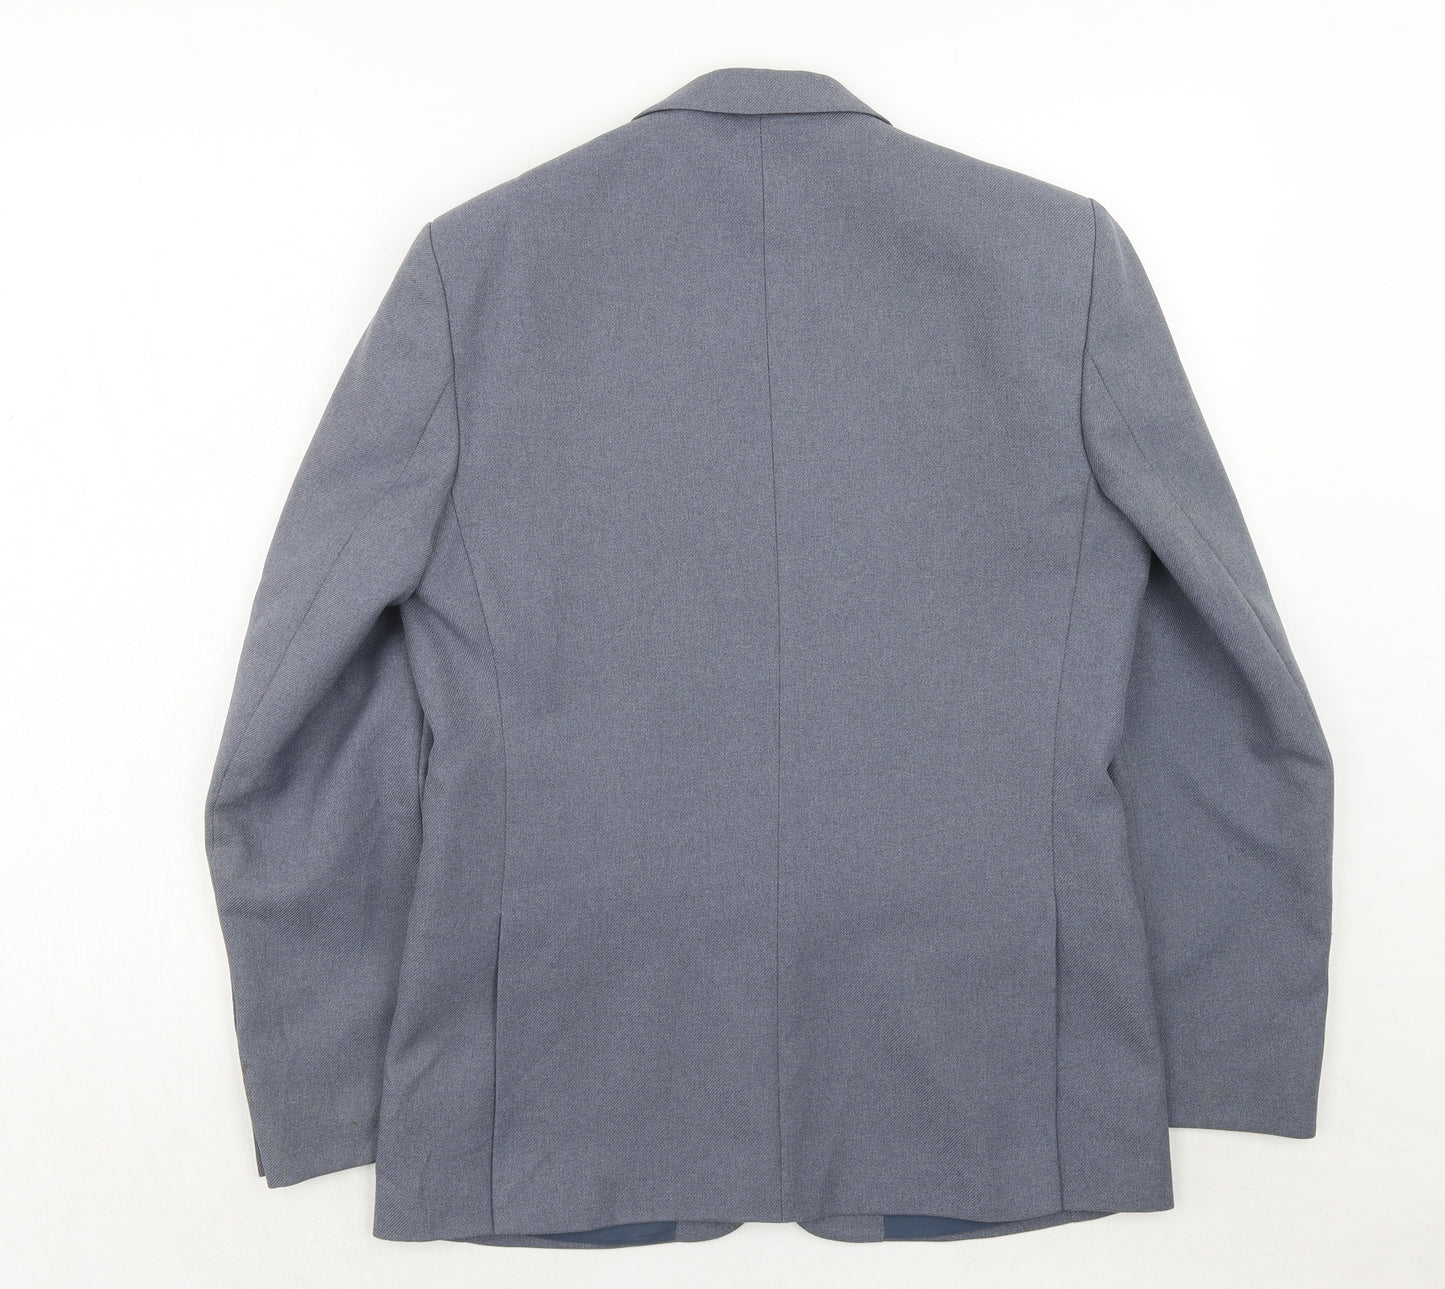 Greenwoods Mens Blue Polyester Jacket Suit Jacket Size 38 Regular